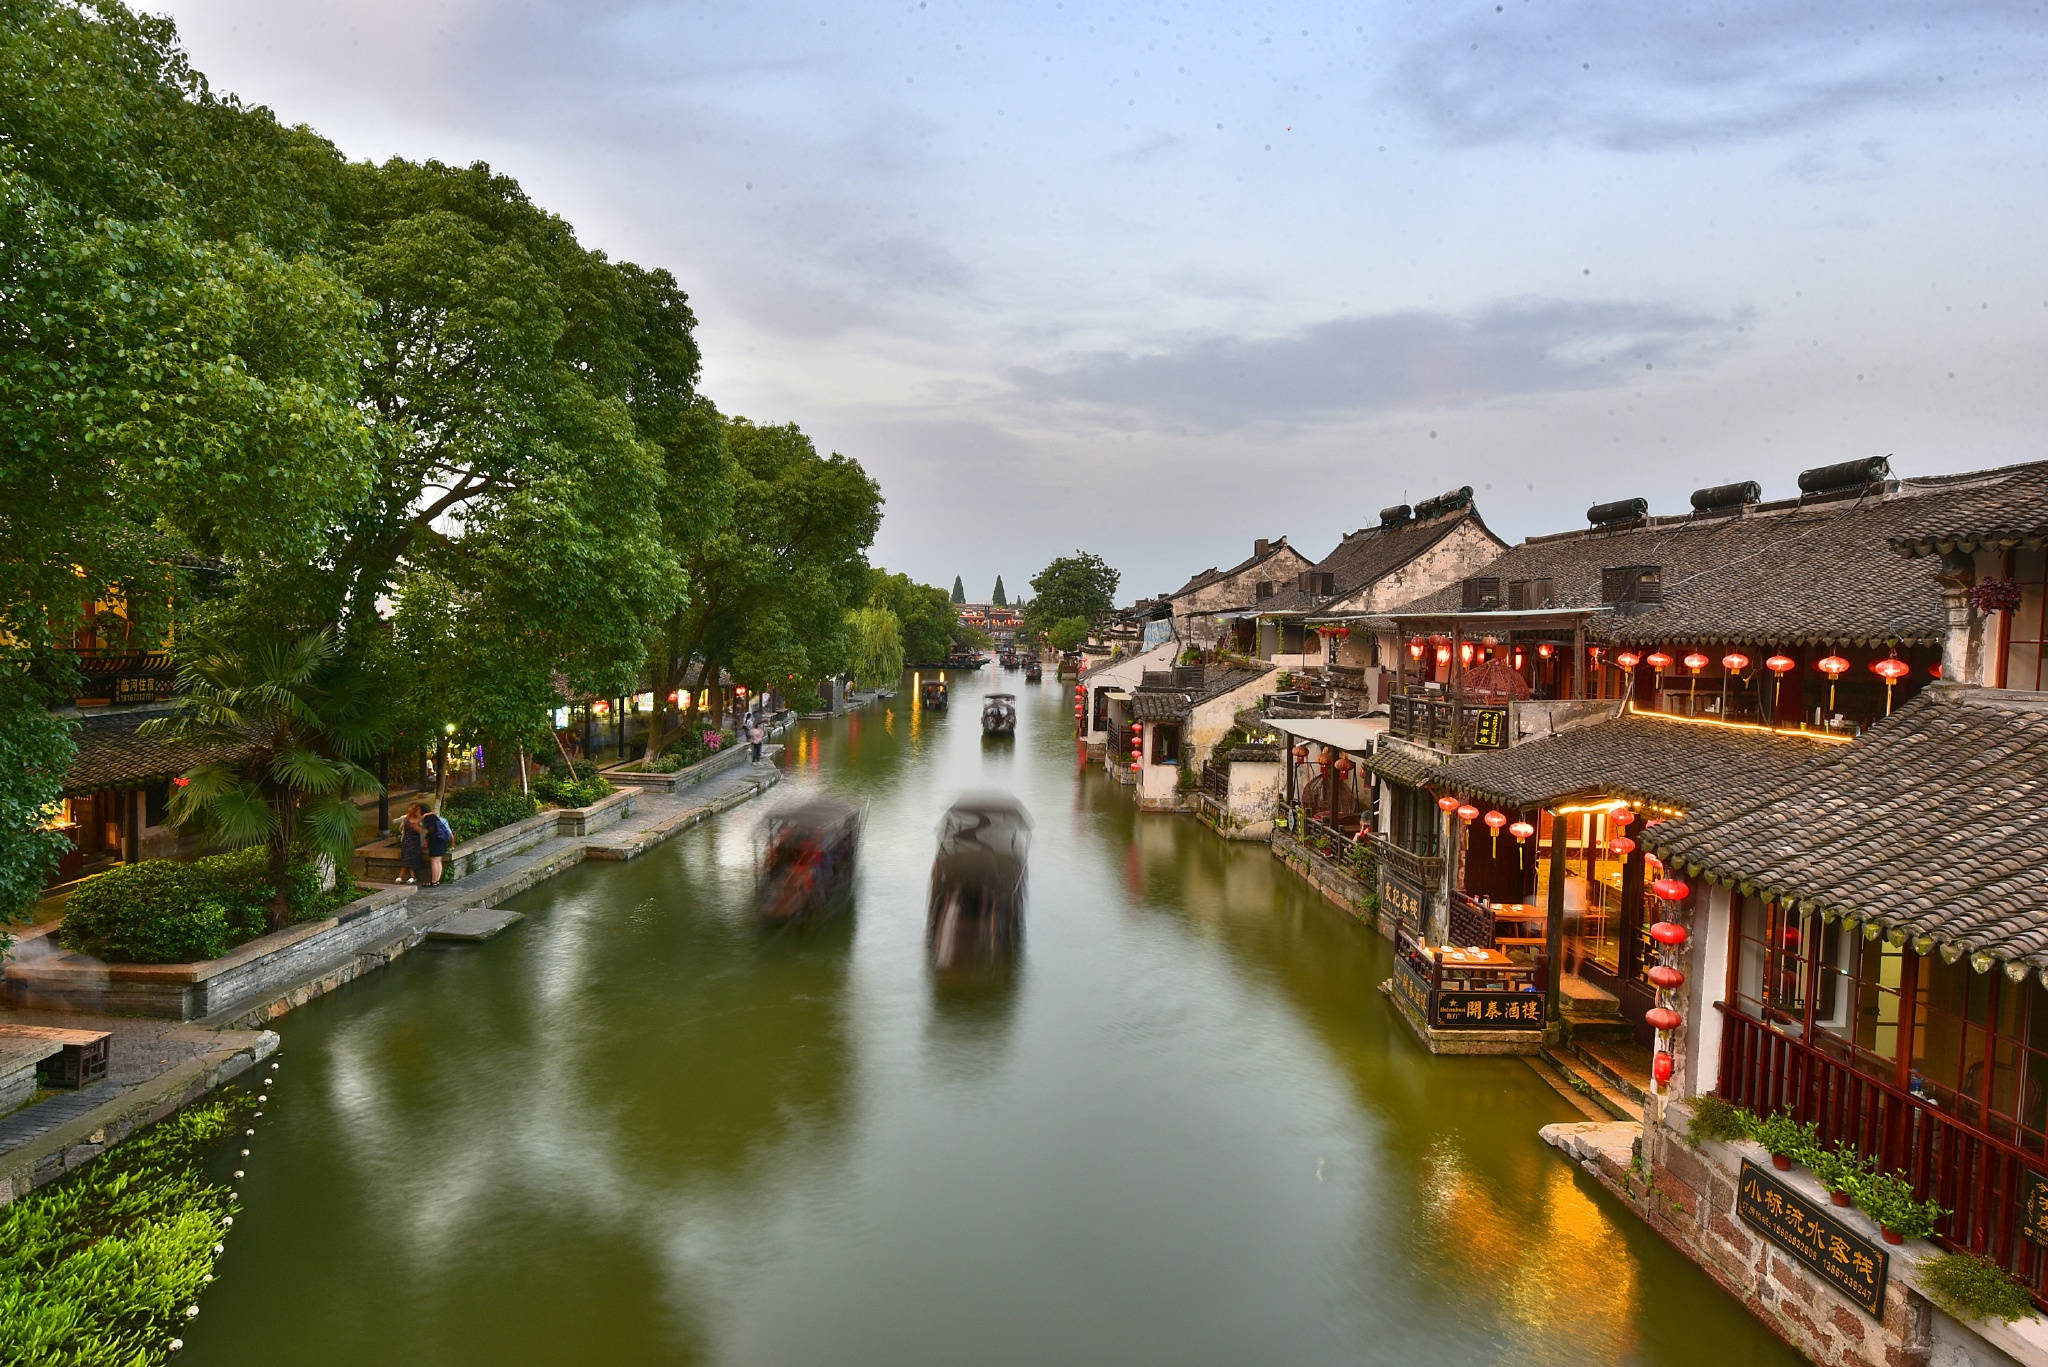 嘉兴历史文化古镇,古代吴越文化的发祥地之一,地理位置优越